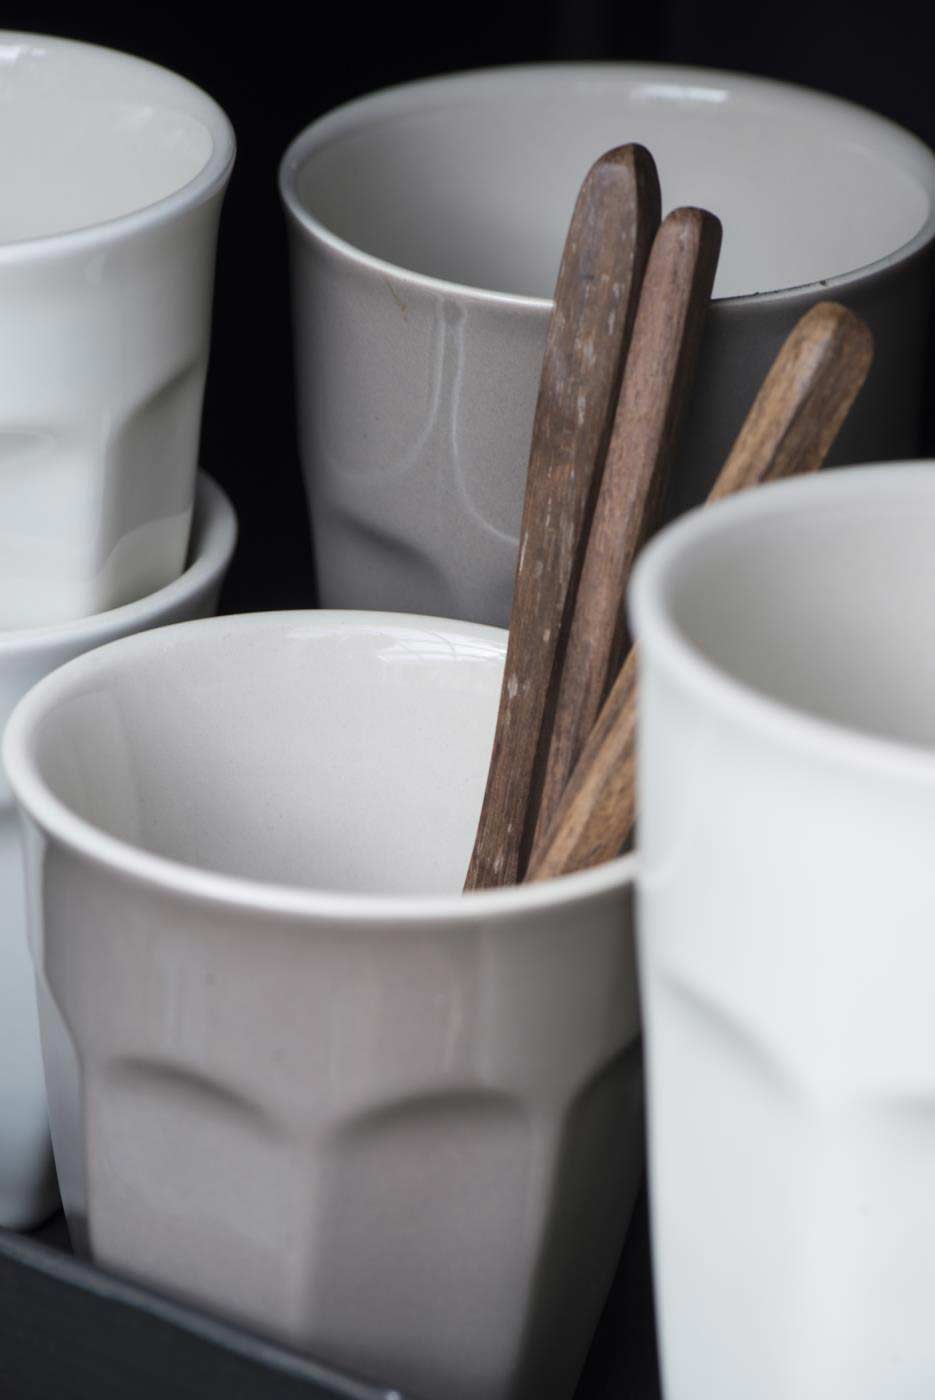 Gestapelte Ib Laursen - Cafe Latte Becher Mynte-Tassen in gedeckten Tönen mit Holzlöffeln darin, vor einem dunklen Hintergrund.